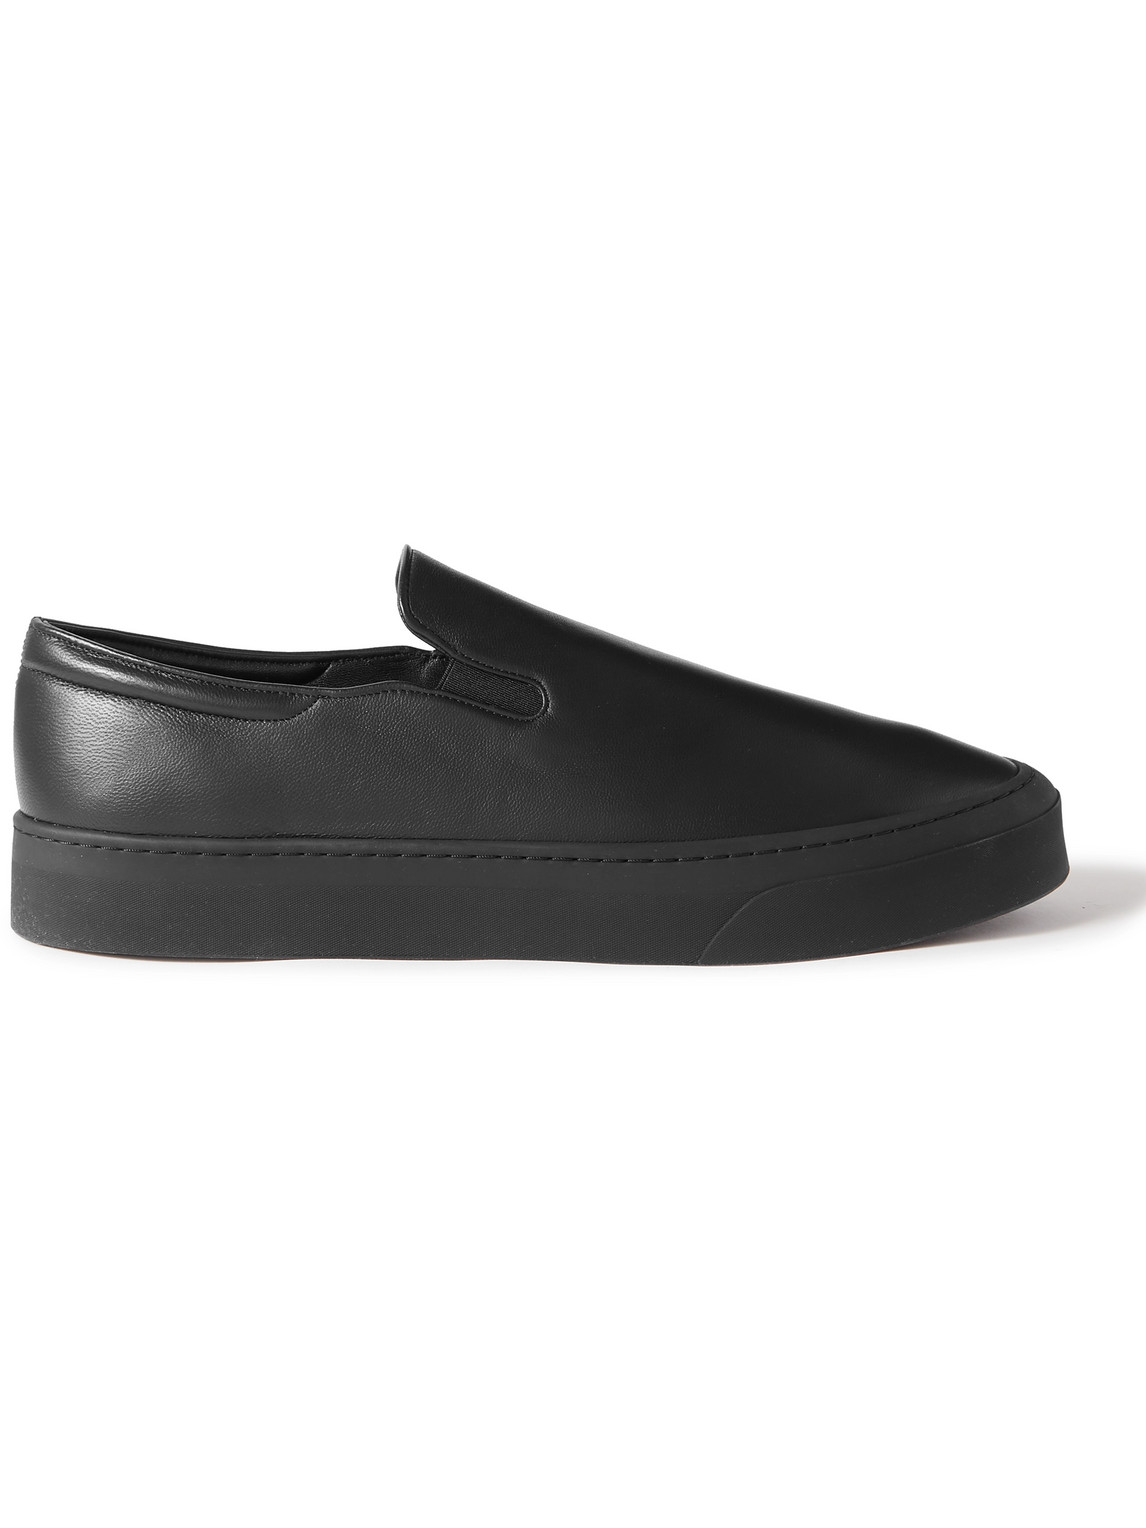 The Row - Dean Leather Slip-On Sneakers - Men - Black - EU 43.5 von The Row